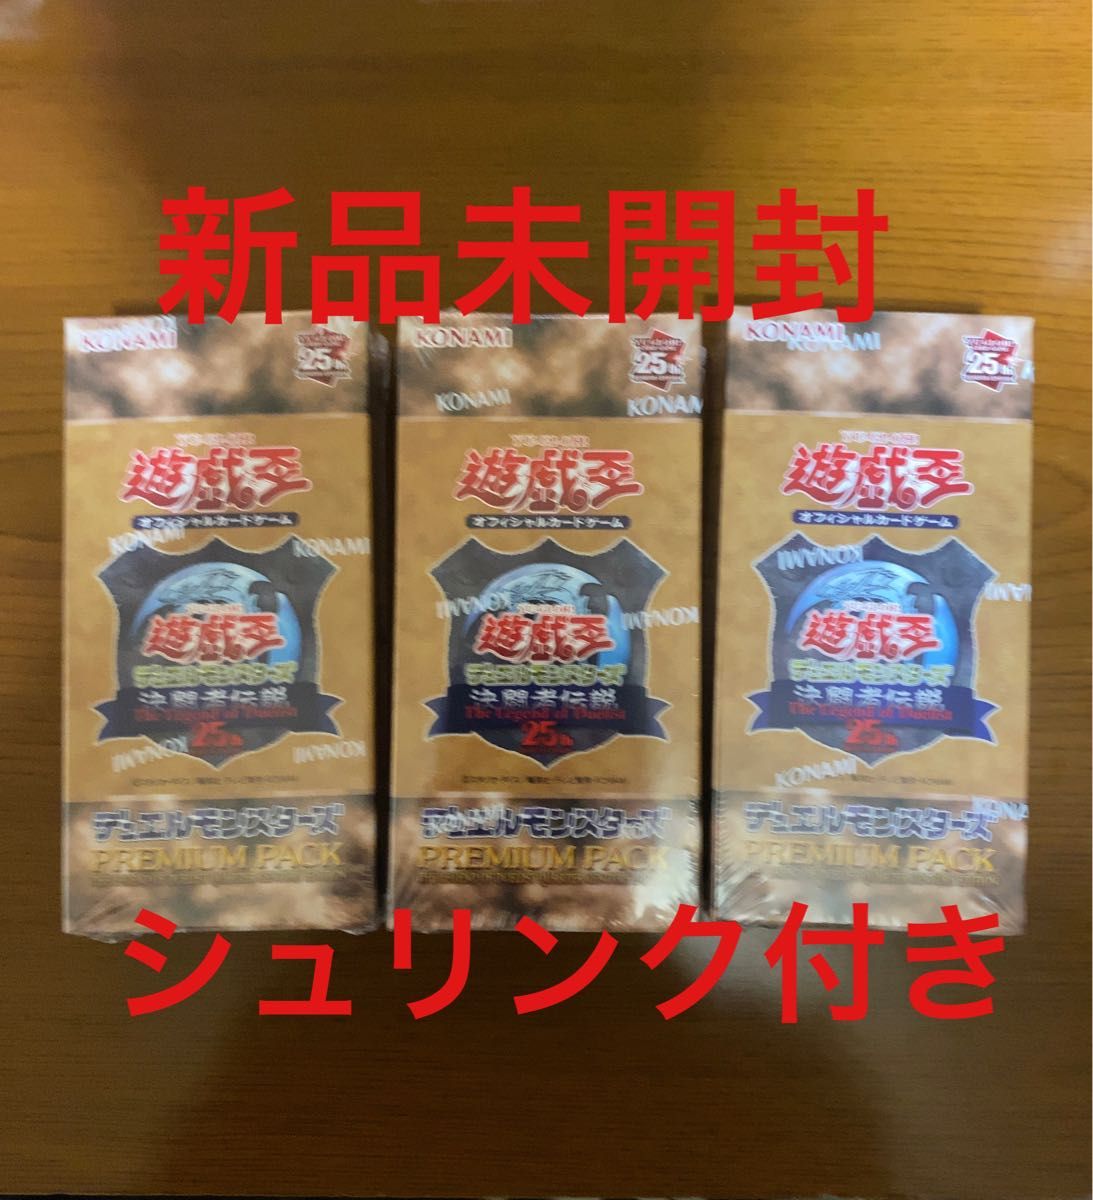 遊戯王 決闘者伝説 プレミアムパック QUARTER CENTURY EDITION 3BOX シュリンク付未開封